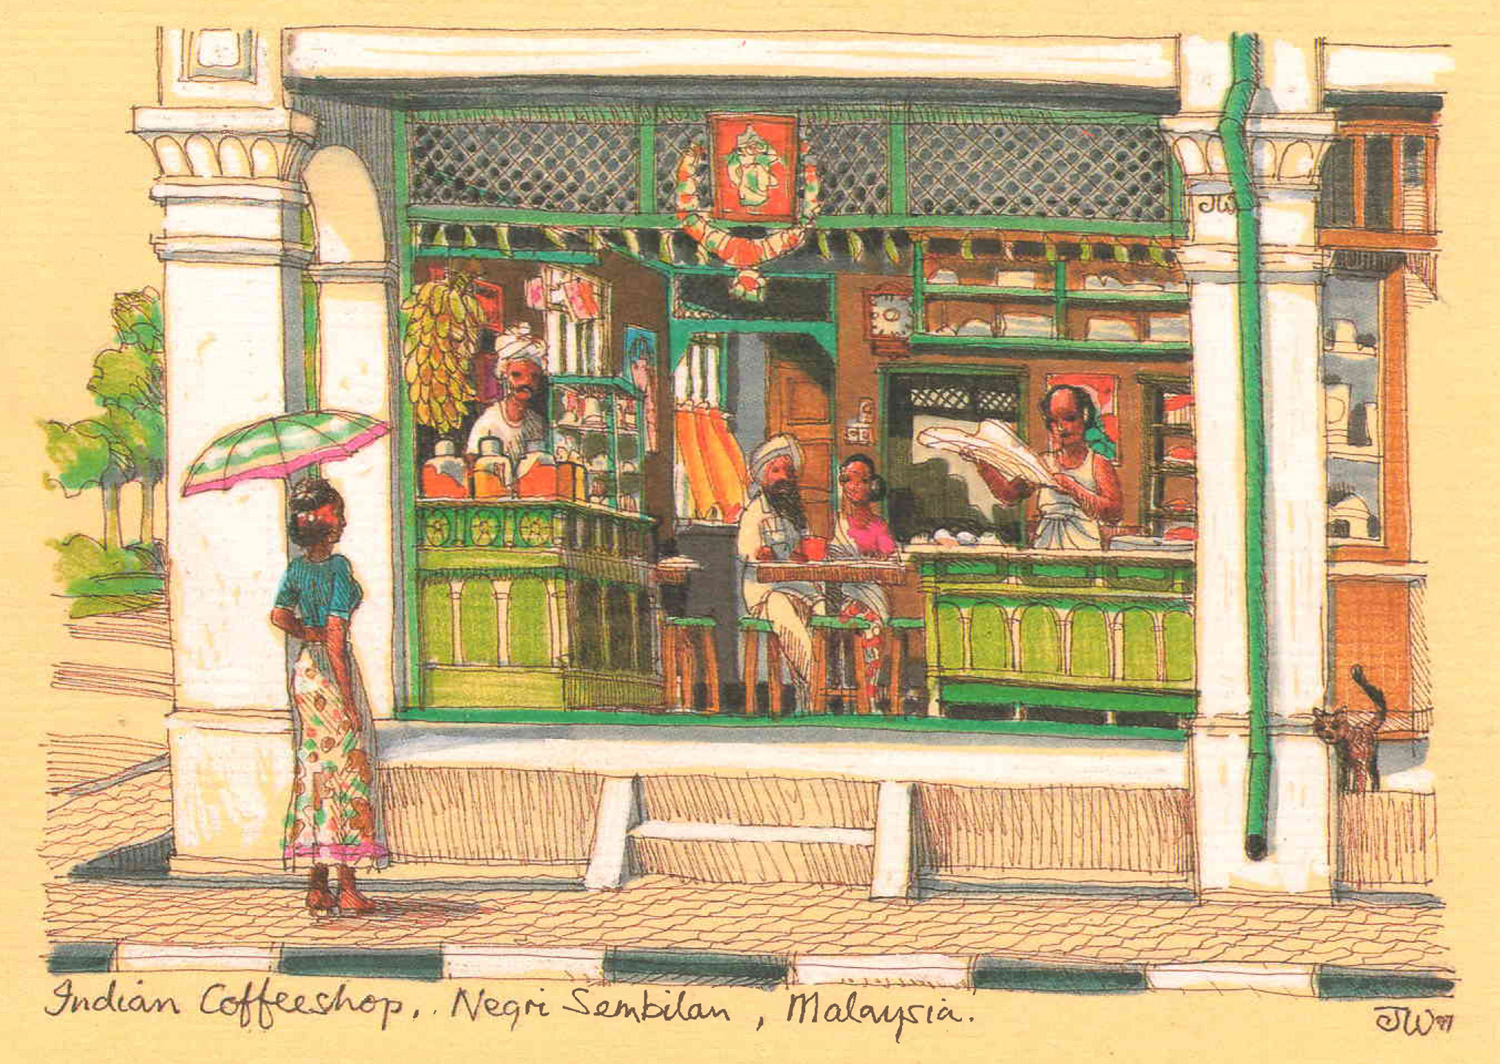 Indian Coffeeshop, Negeri Sembilan, Malaysia British colonial Malaya architecture painting art architect malaysia